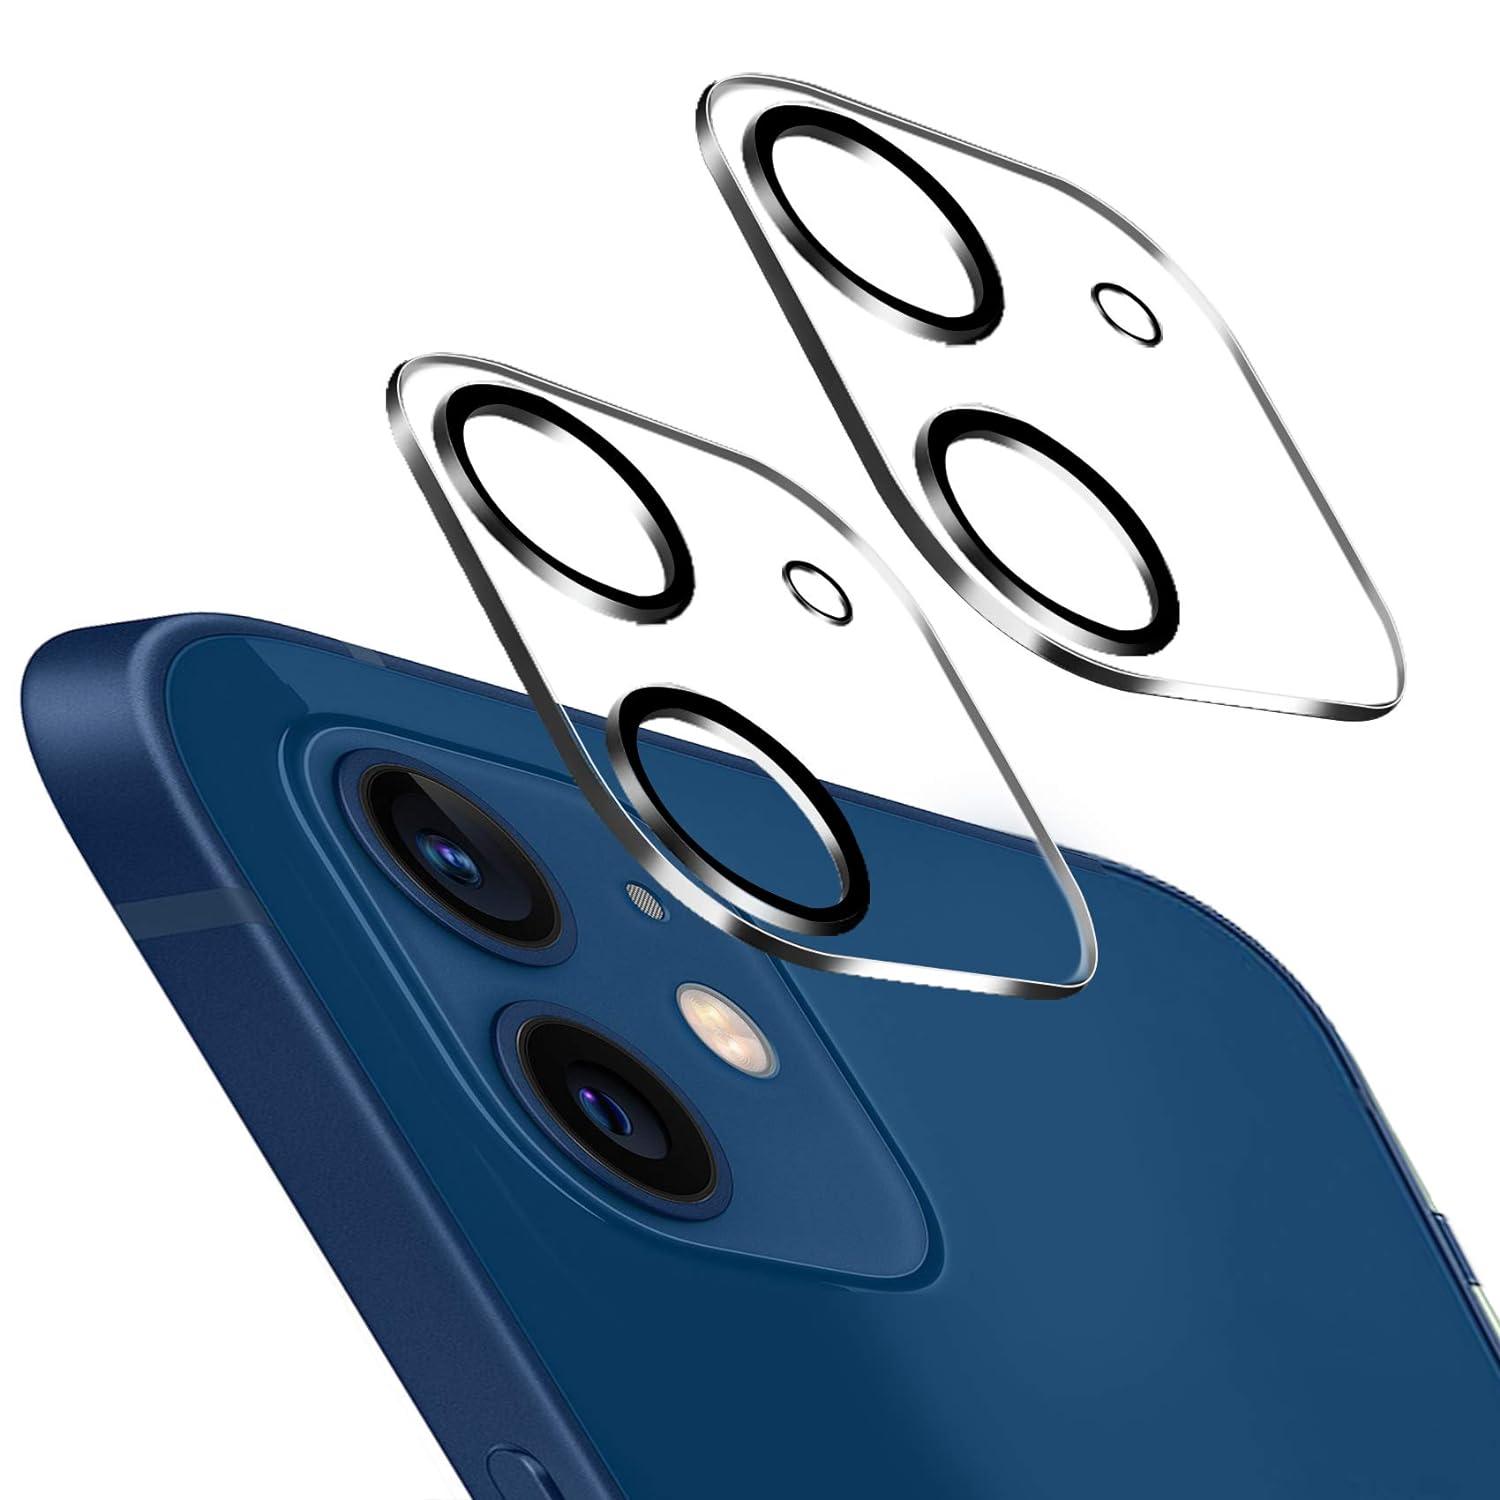 Vidrio templado con marco para cámara de iPhone: protege tu cámara de golpes y arañazos - Tubelux